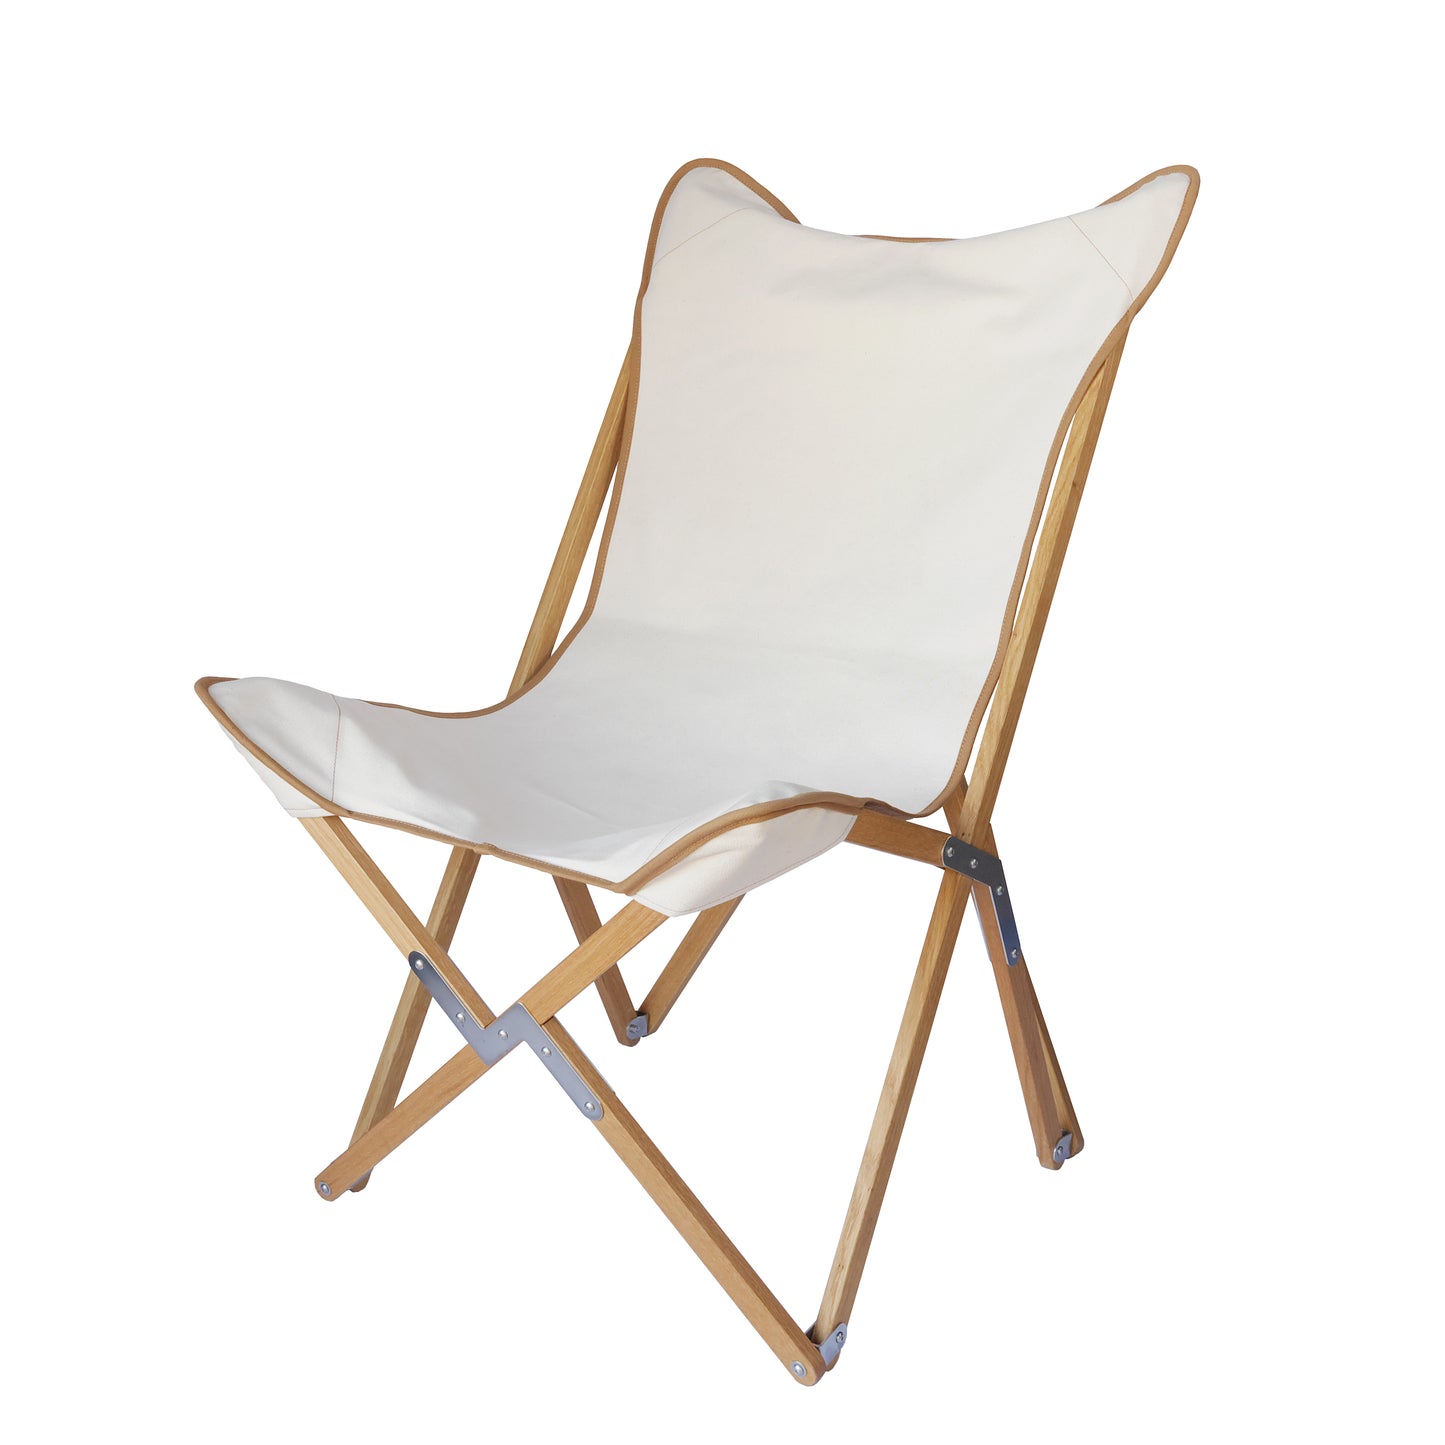 nachhaltiger und faltbarer stuhl zum campen aus holz und baumwolle in ecru von kampier